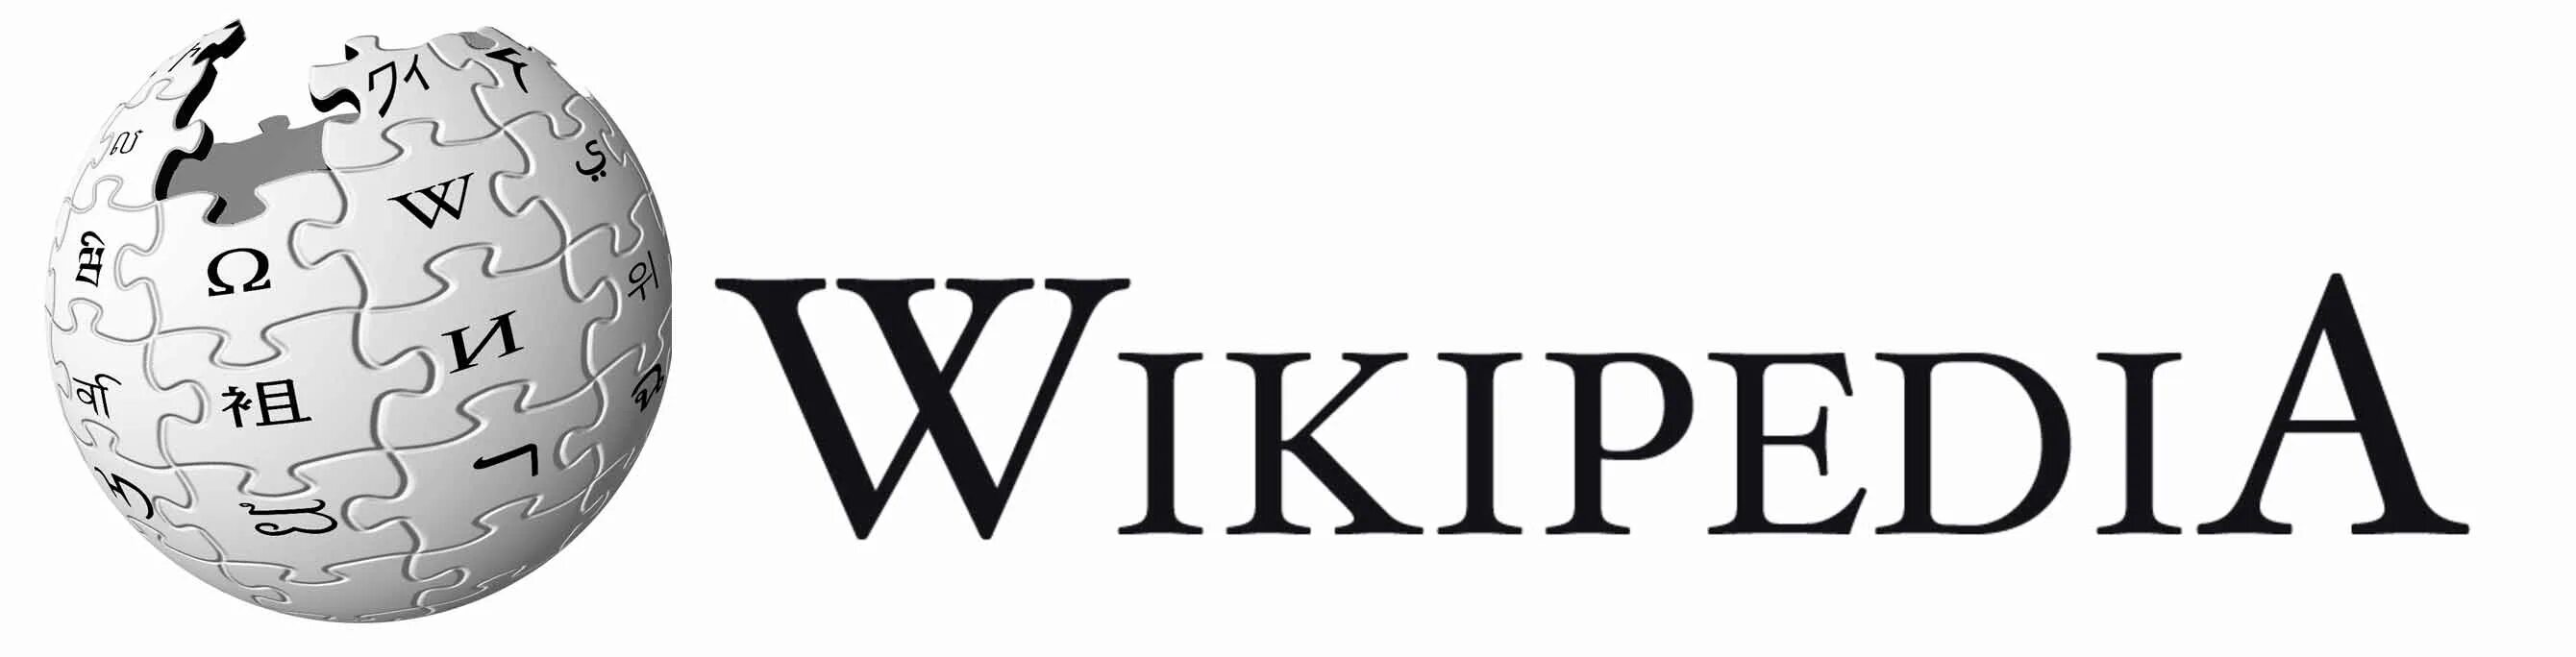 Википедия эмблема. Значок Википедии. Википедия логотип картинка. Википедия картинки. Https www wikipedia